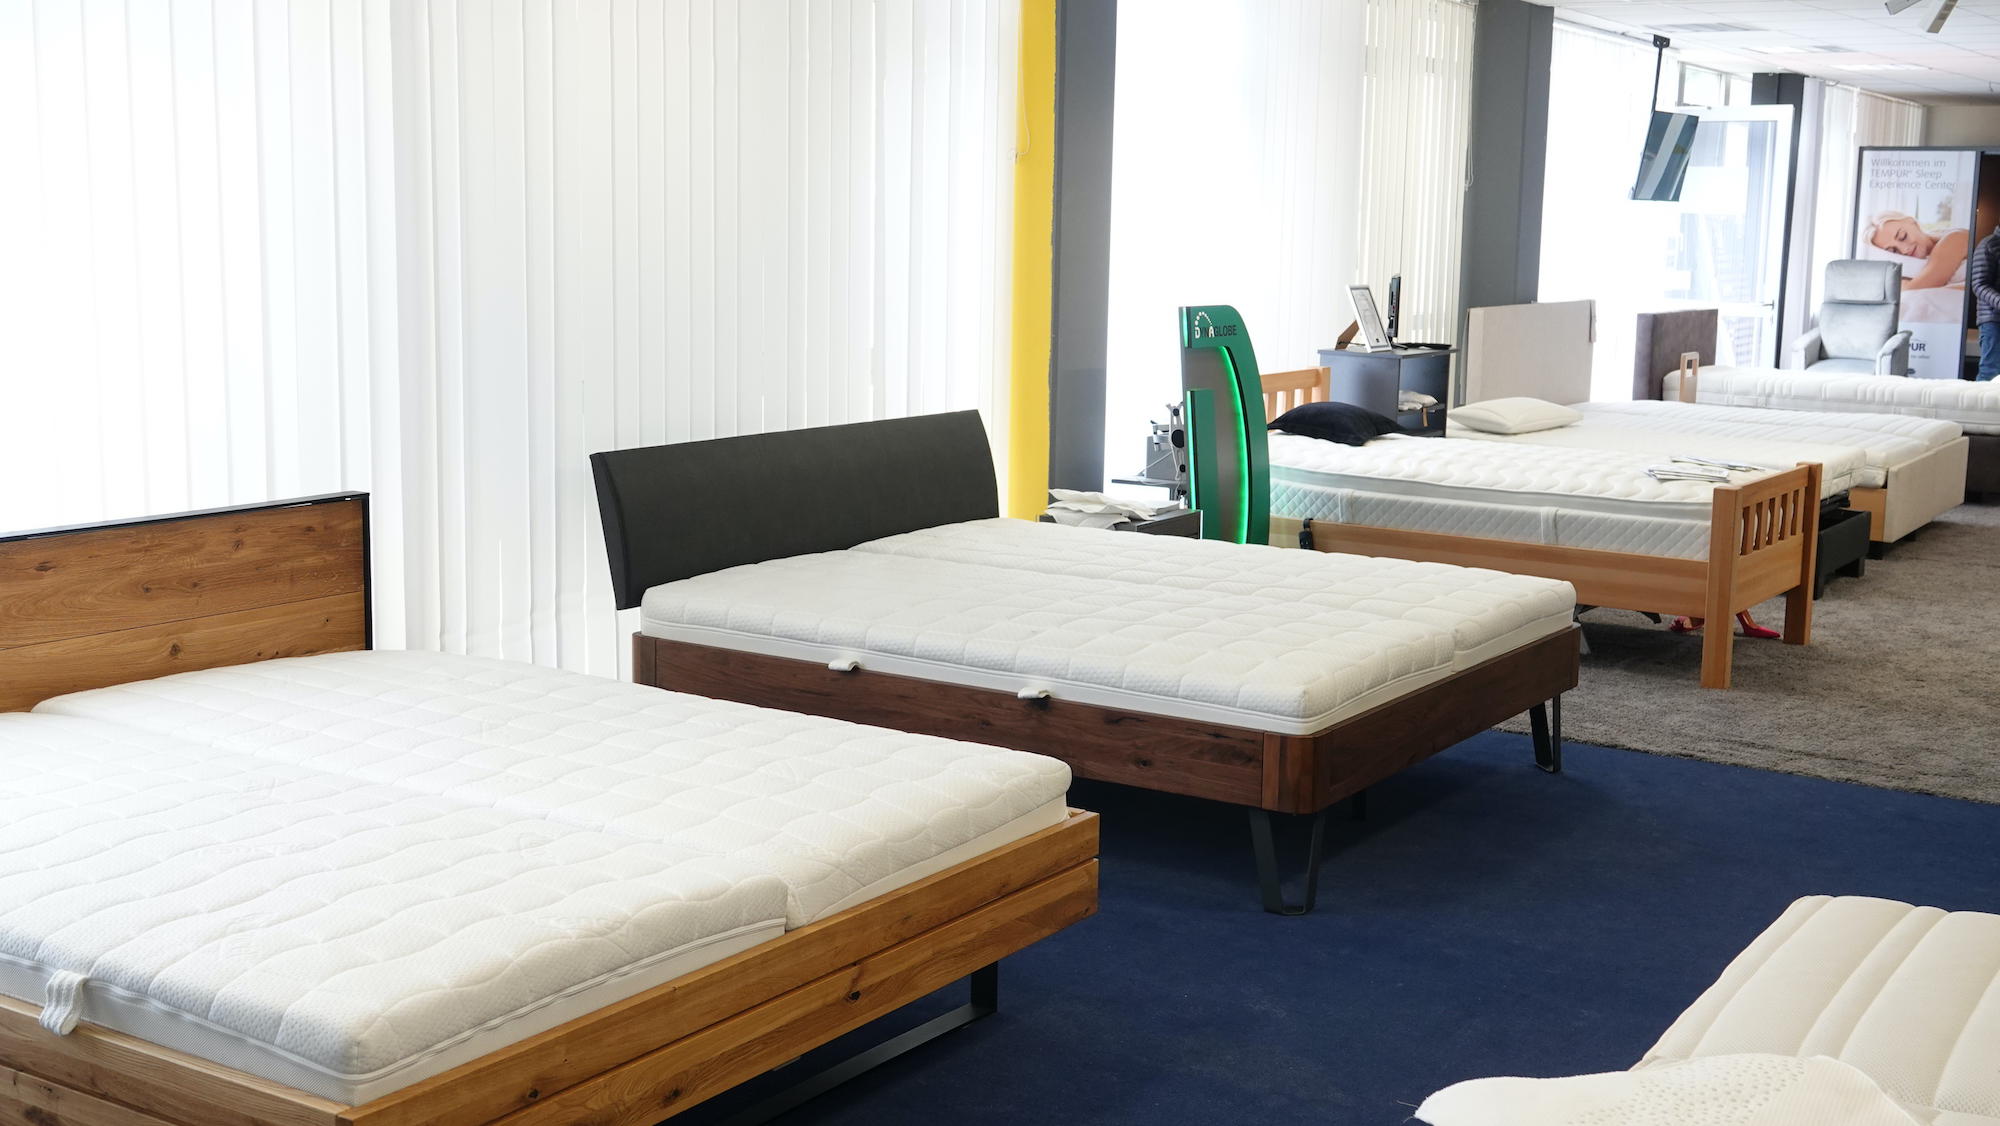 Kundenbild groß 6 Göpfert - gesund schlafen I Matratzen & Betten